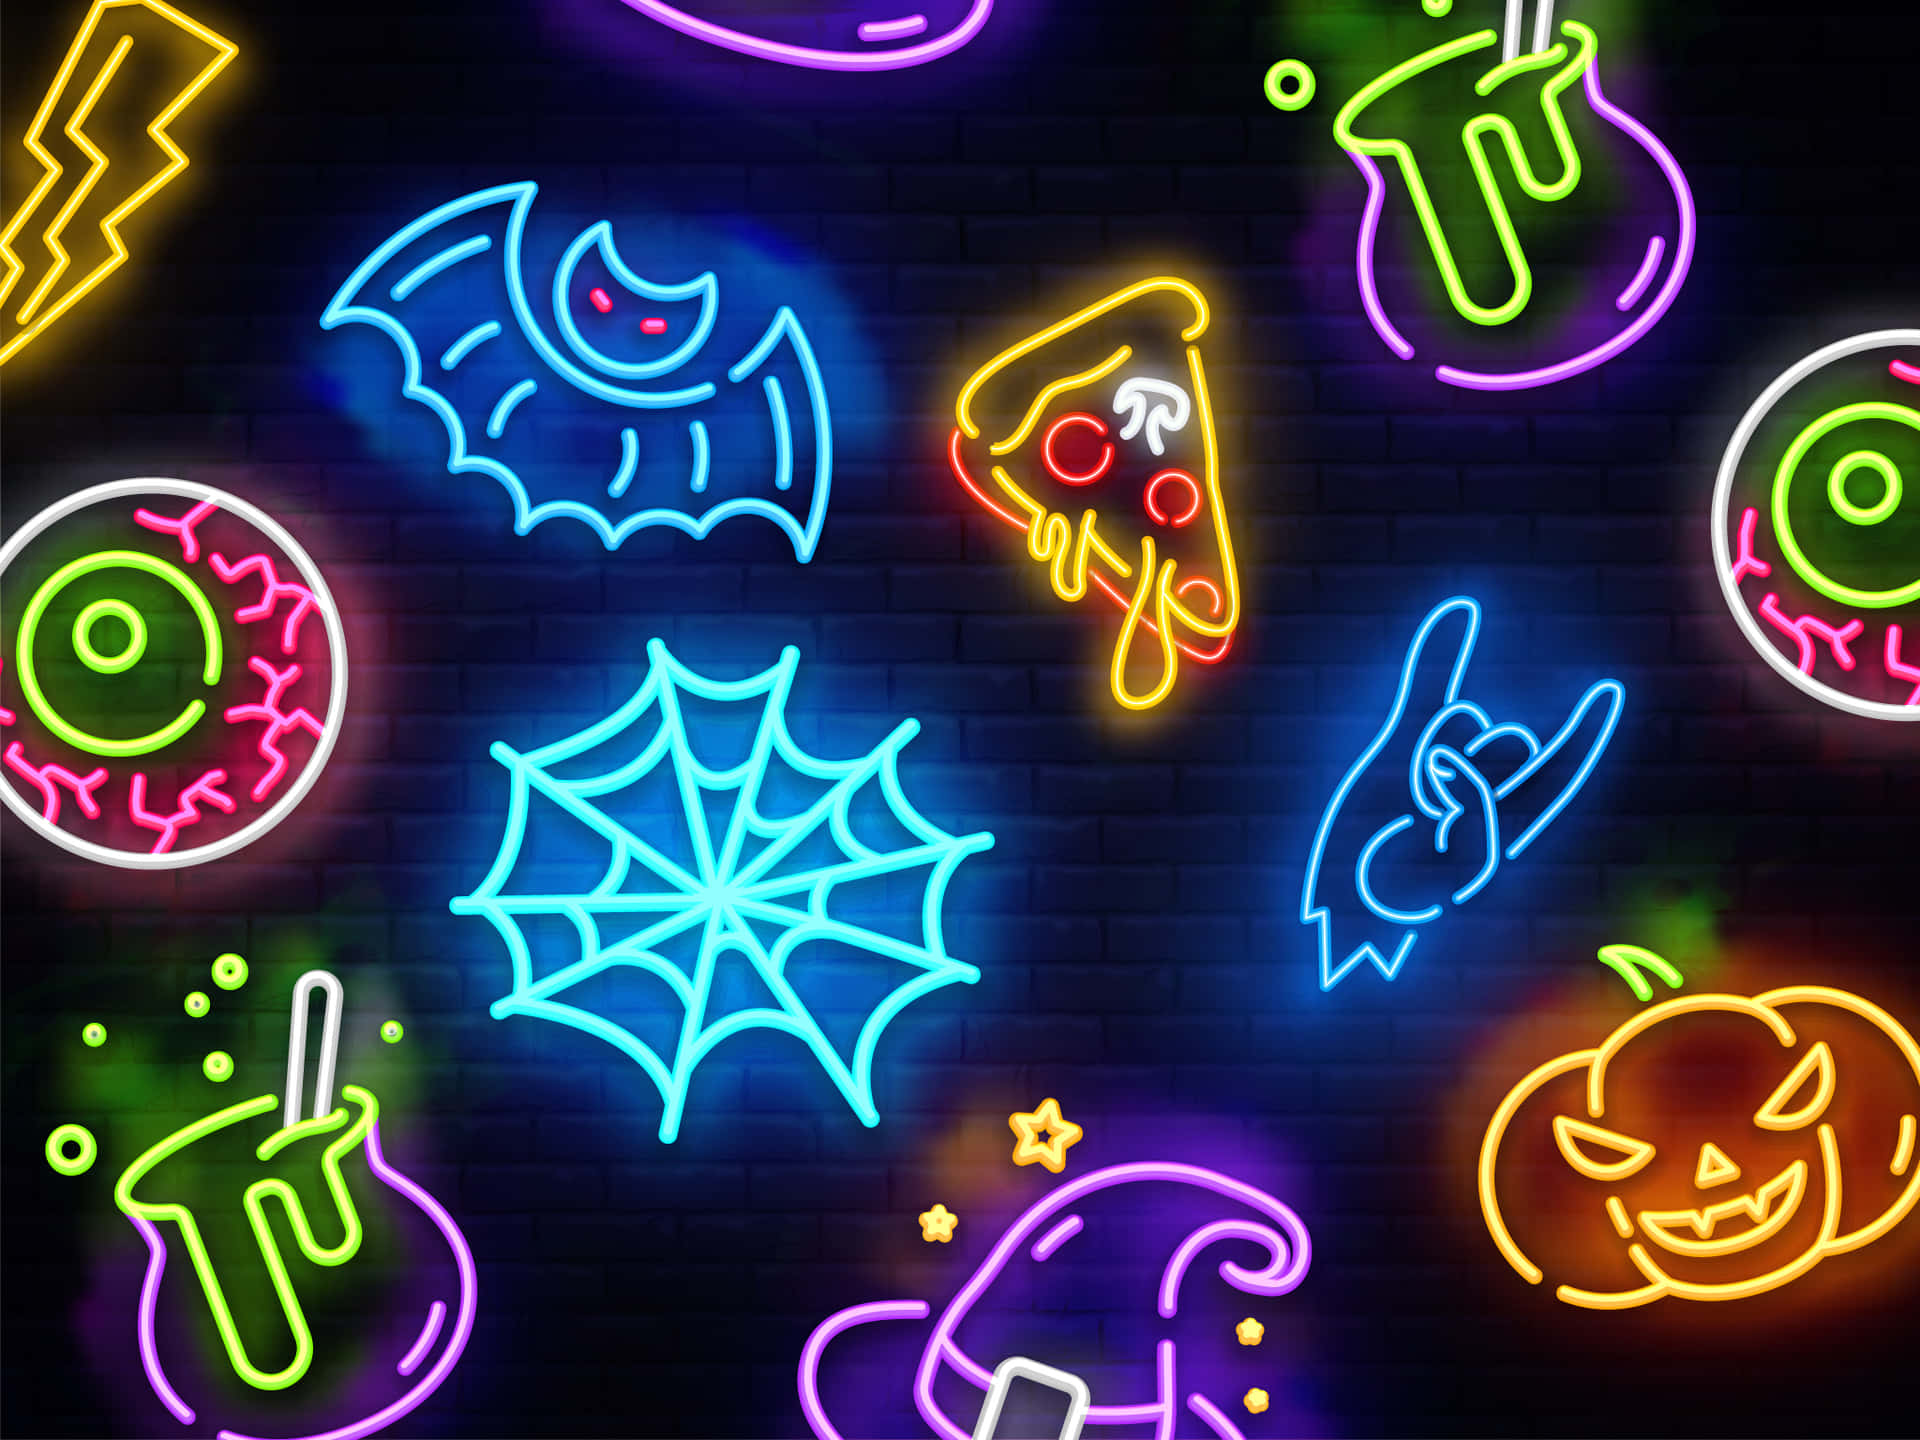 Free Download Neon Halloween Backgrounds for Desktop  PixelsTalkNet